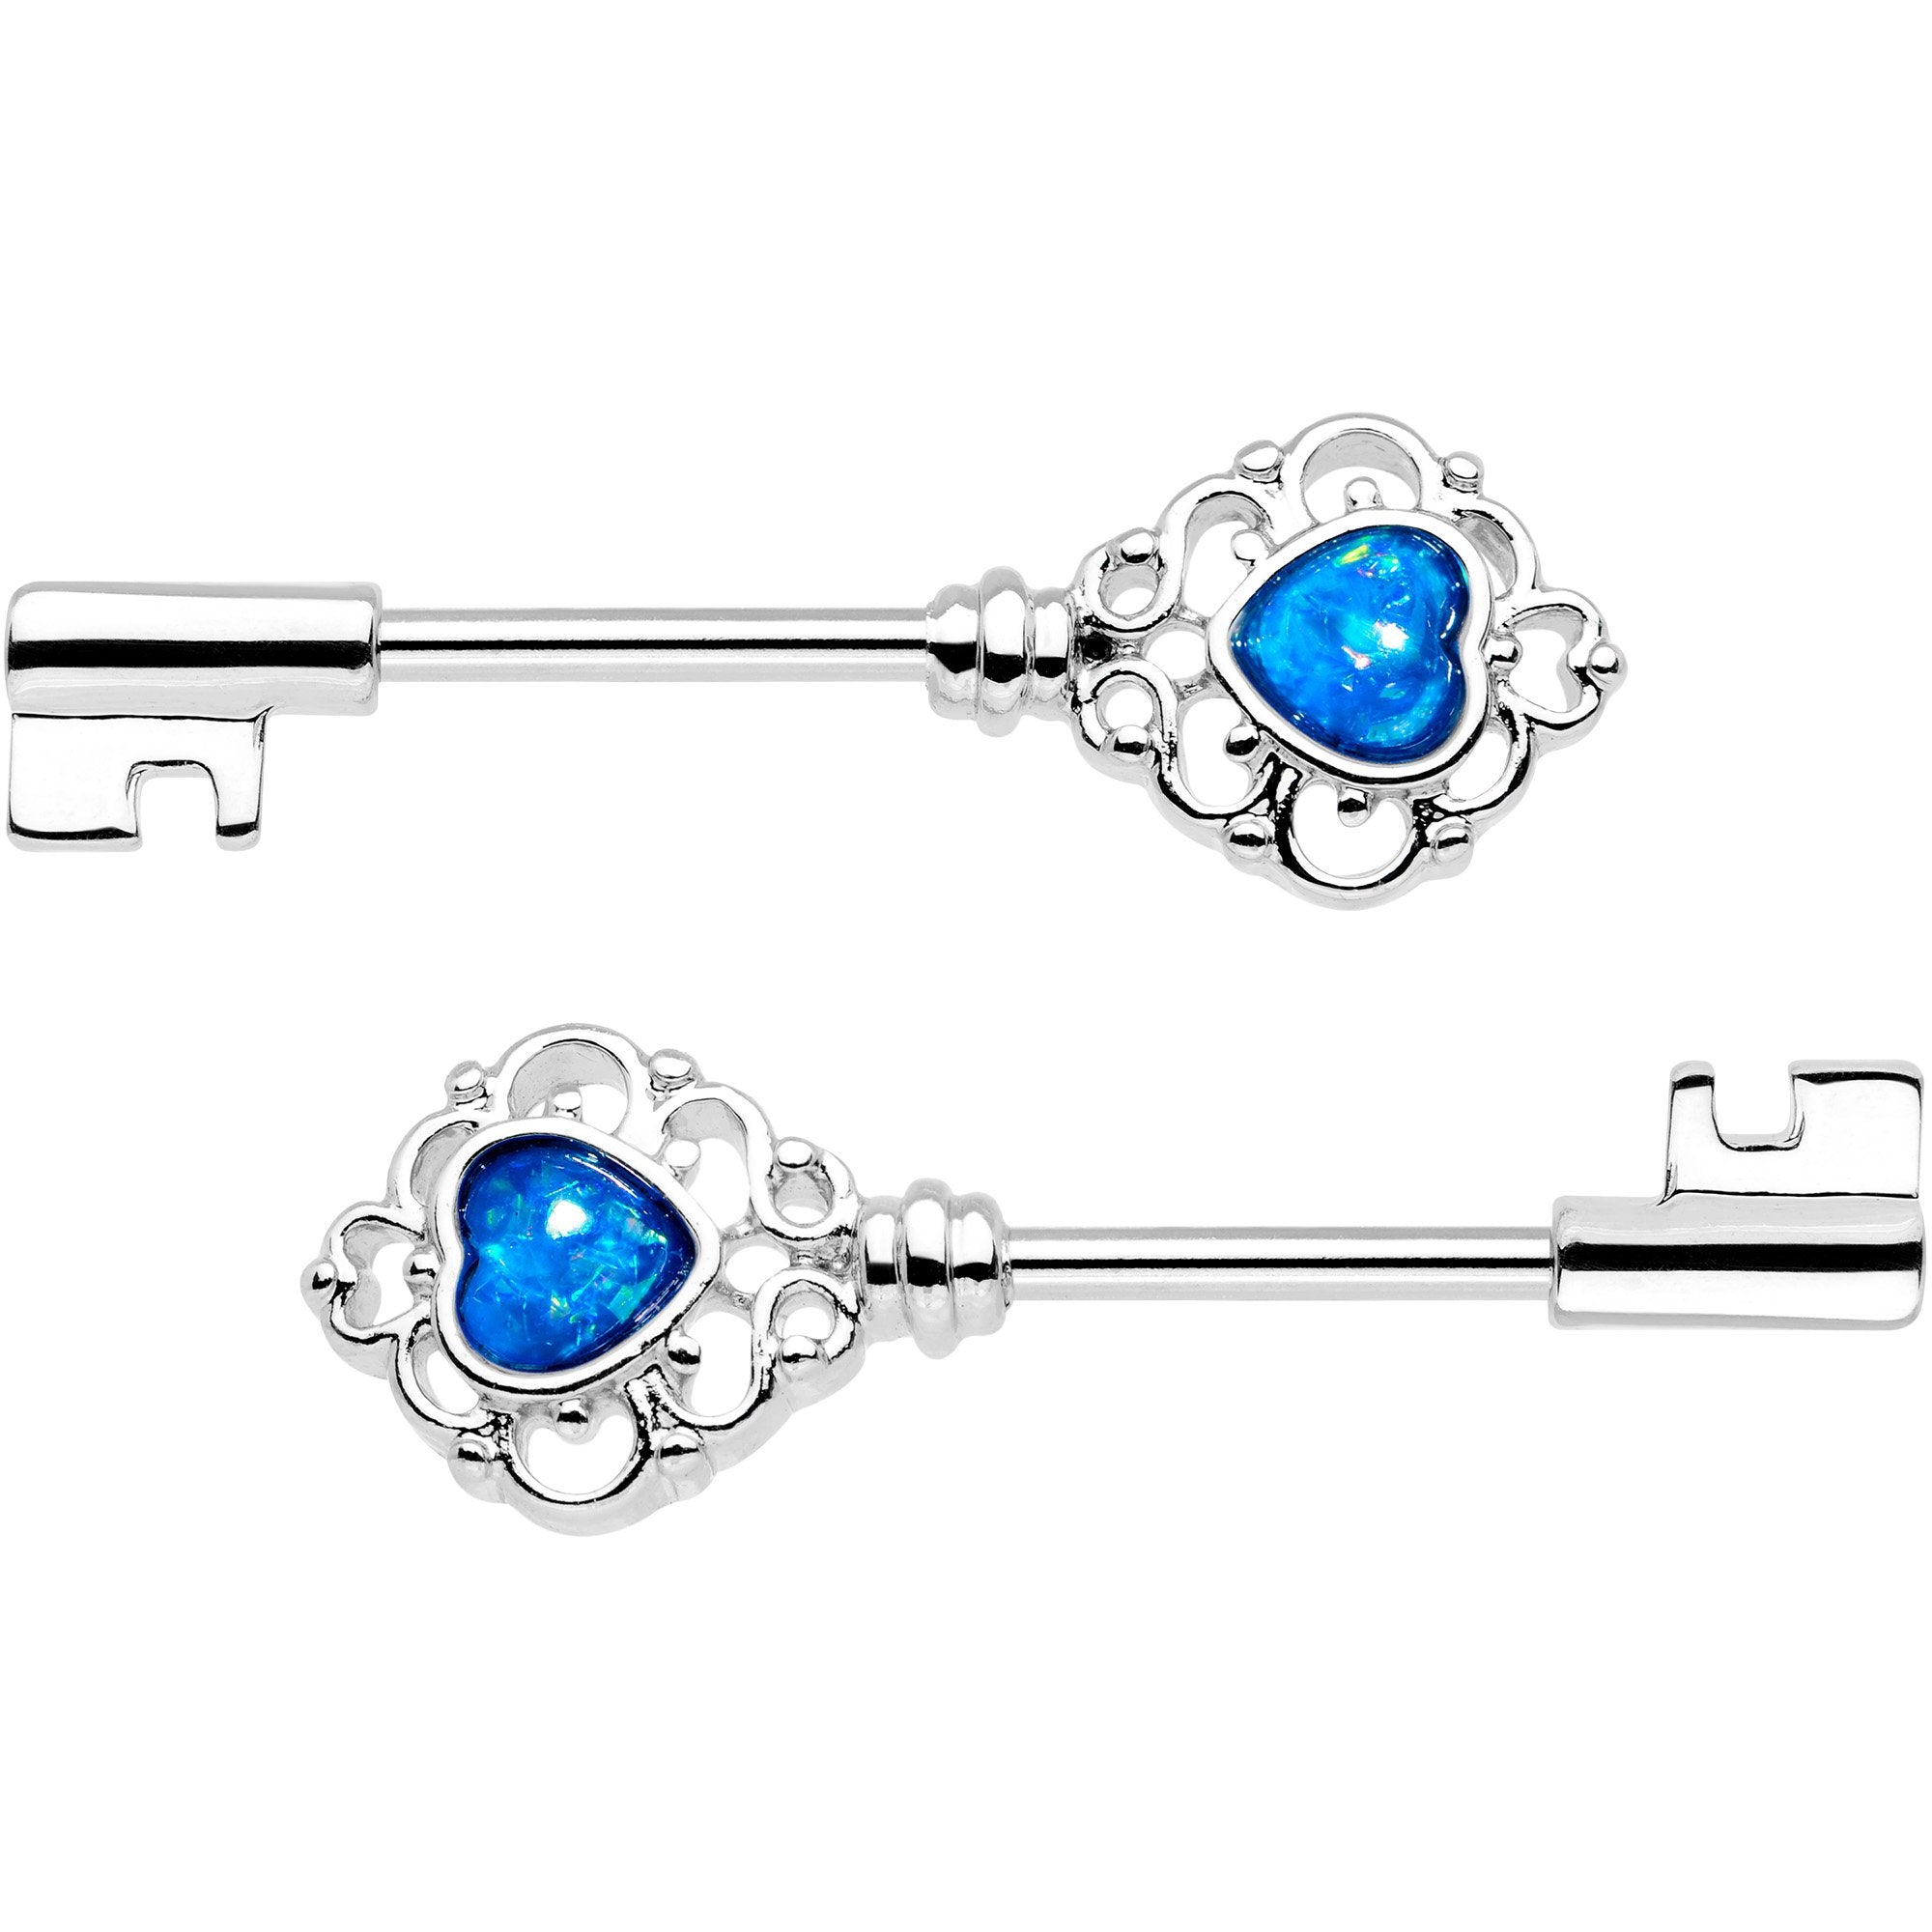 1/2 Blue Faux Opal Heart Key Barbell Nipple Ring Set